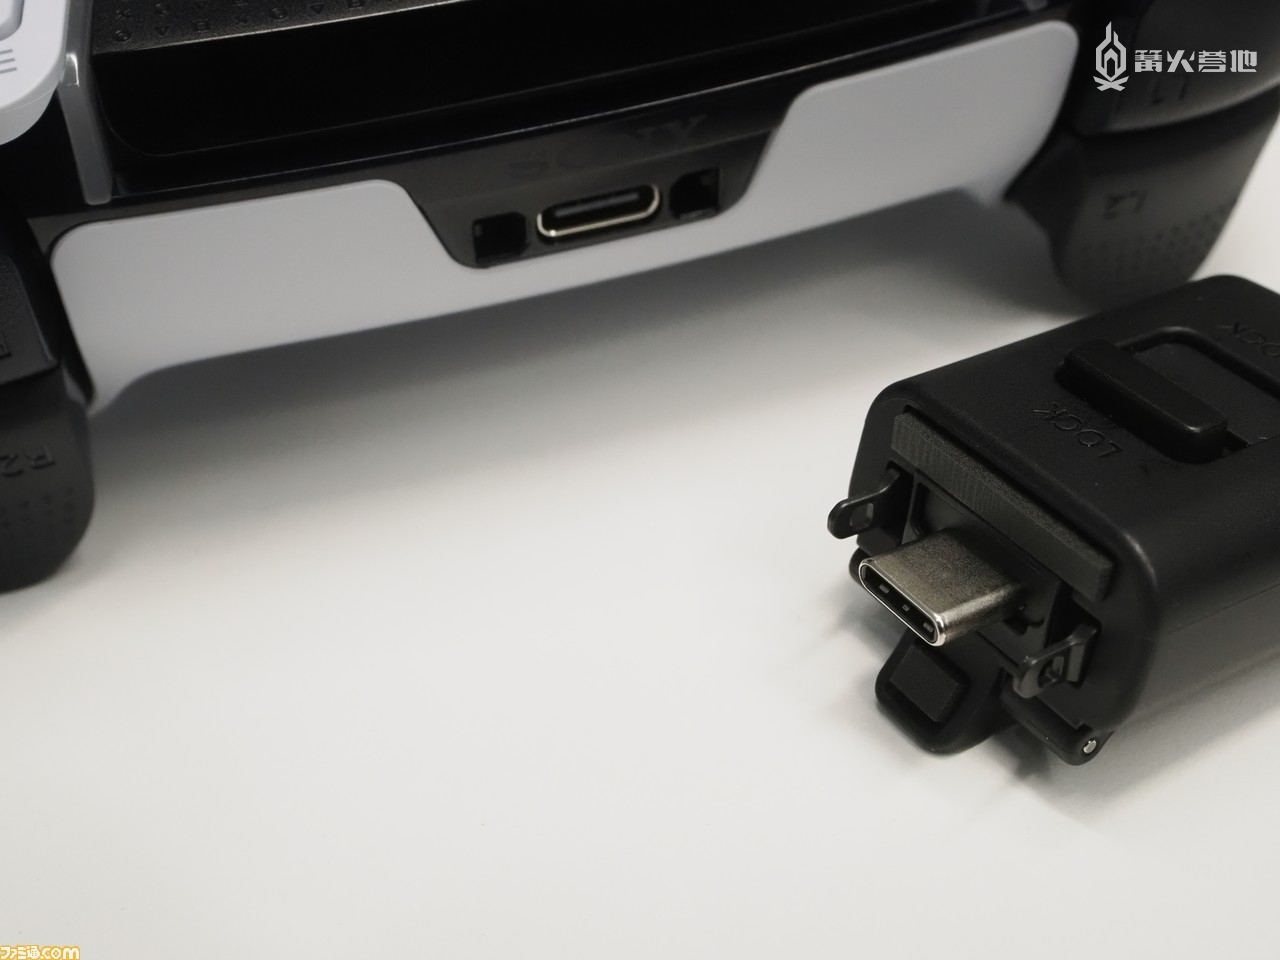 接口两侧凸出的黑色金属部件能够与 DualSense Edge 本体完美嵌合，将连接保护头上的开关滑动至「Lock」状态后，就能固定连接。当然，不使用连接保护头也可以正常连接数据线